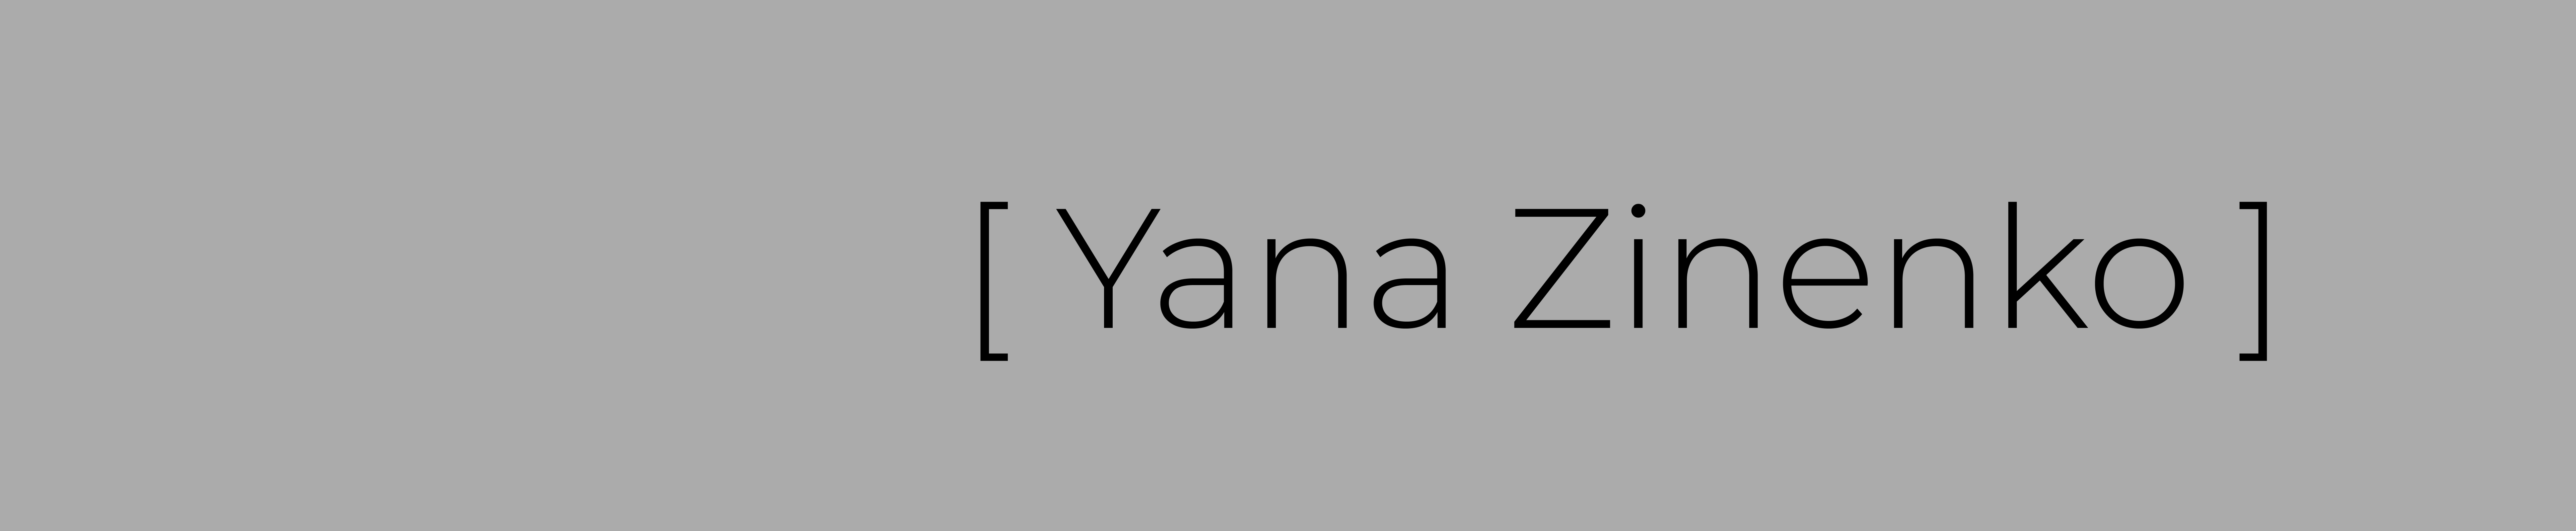 Yana Zinenko profil başlığı